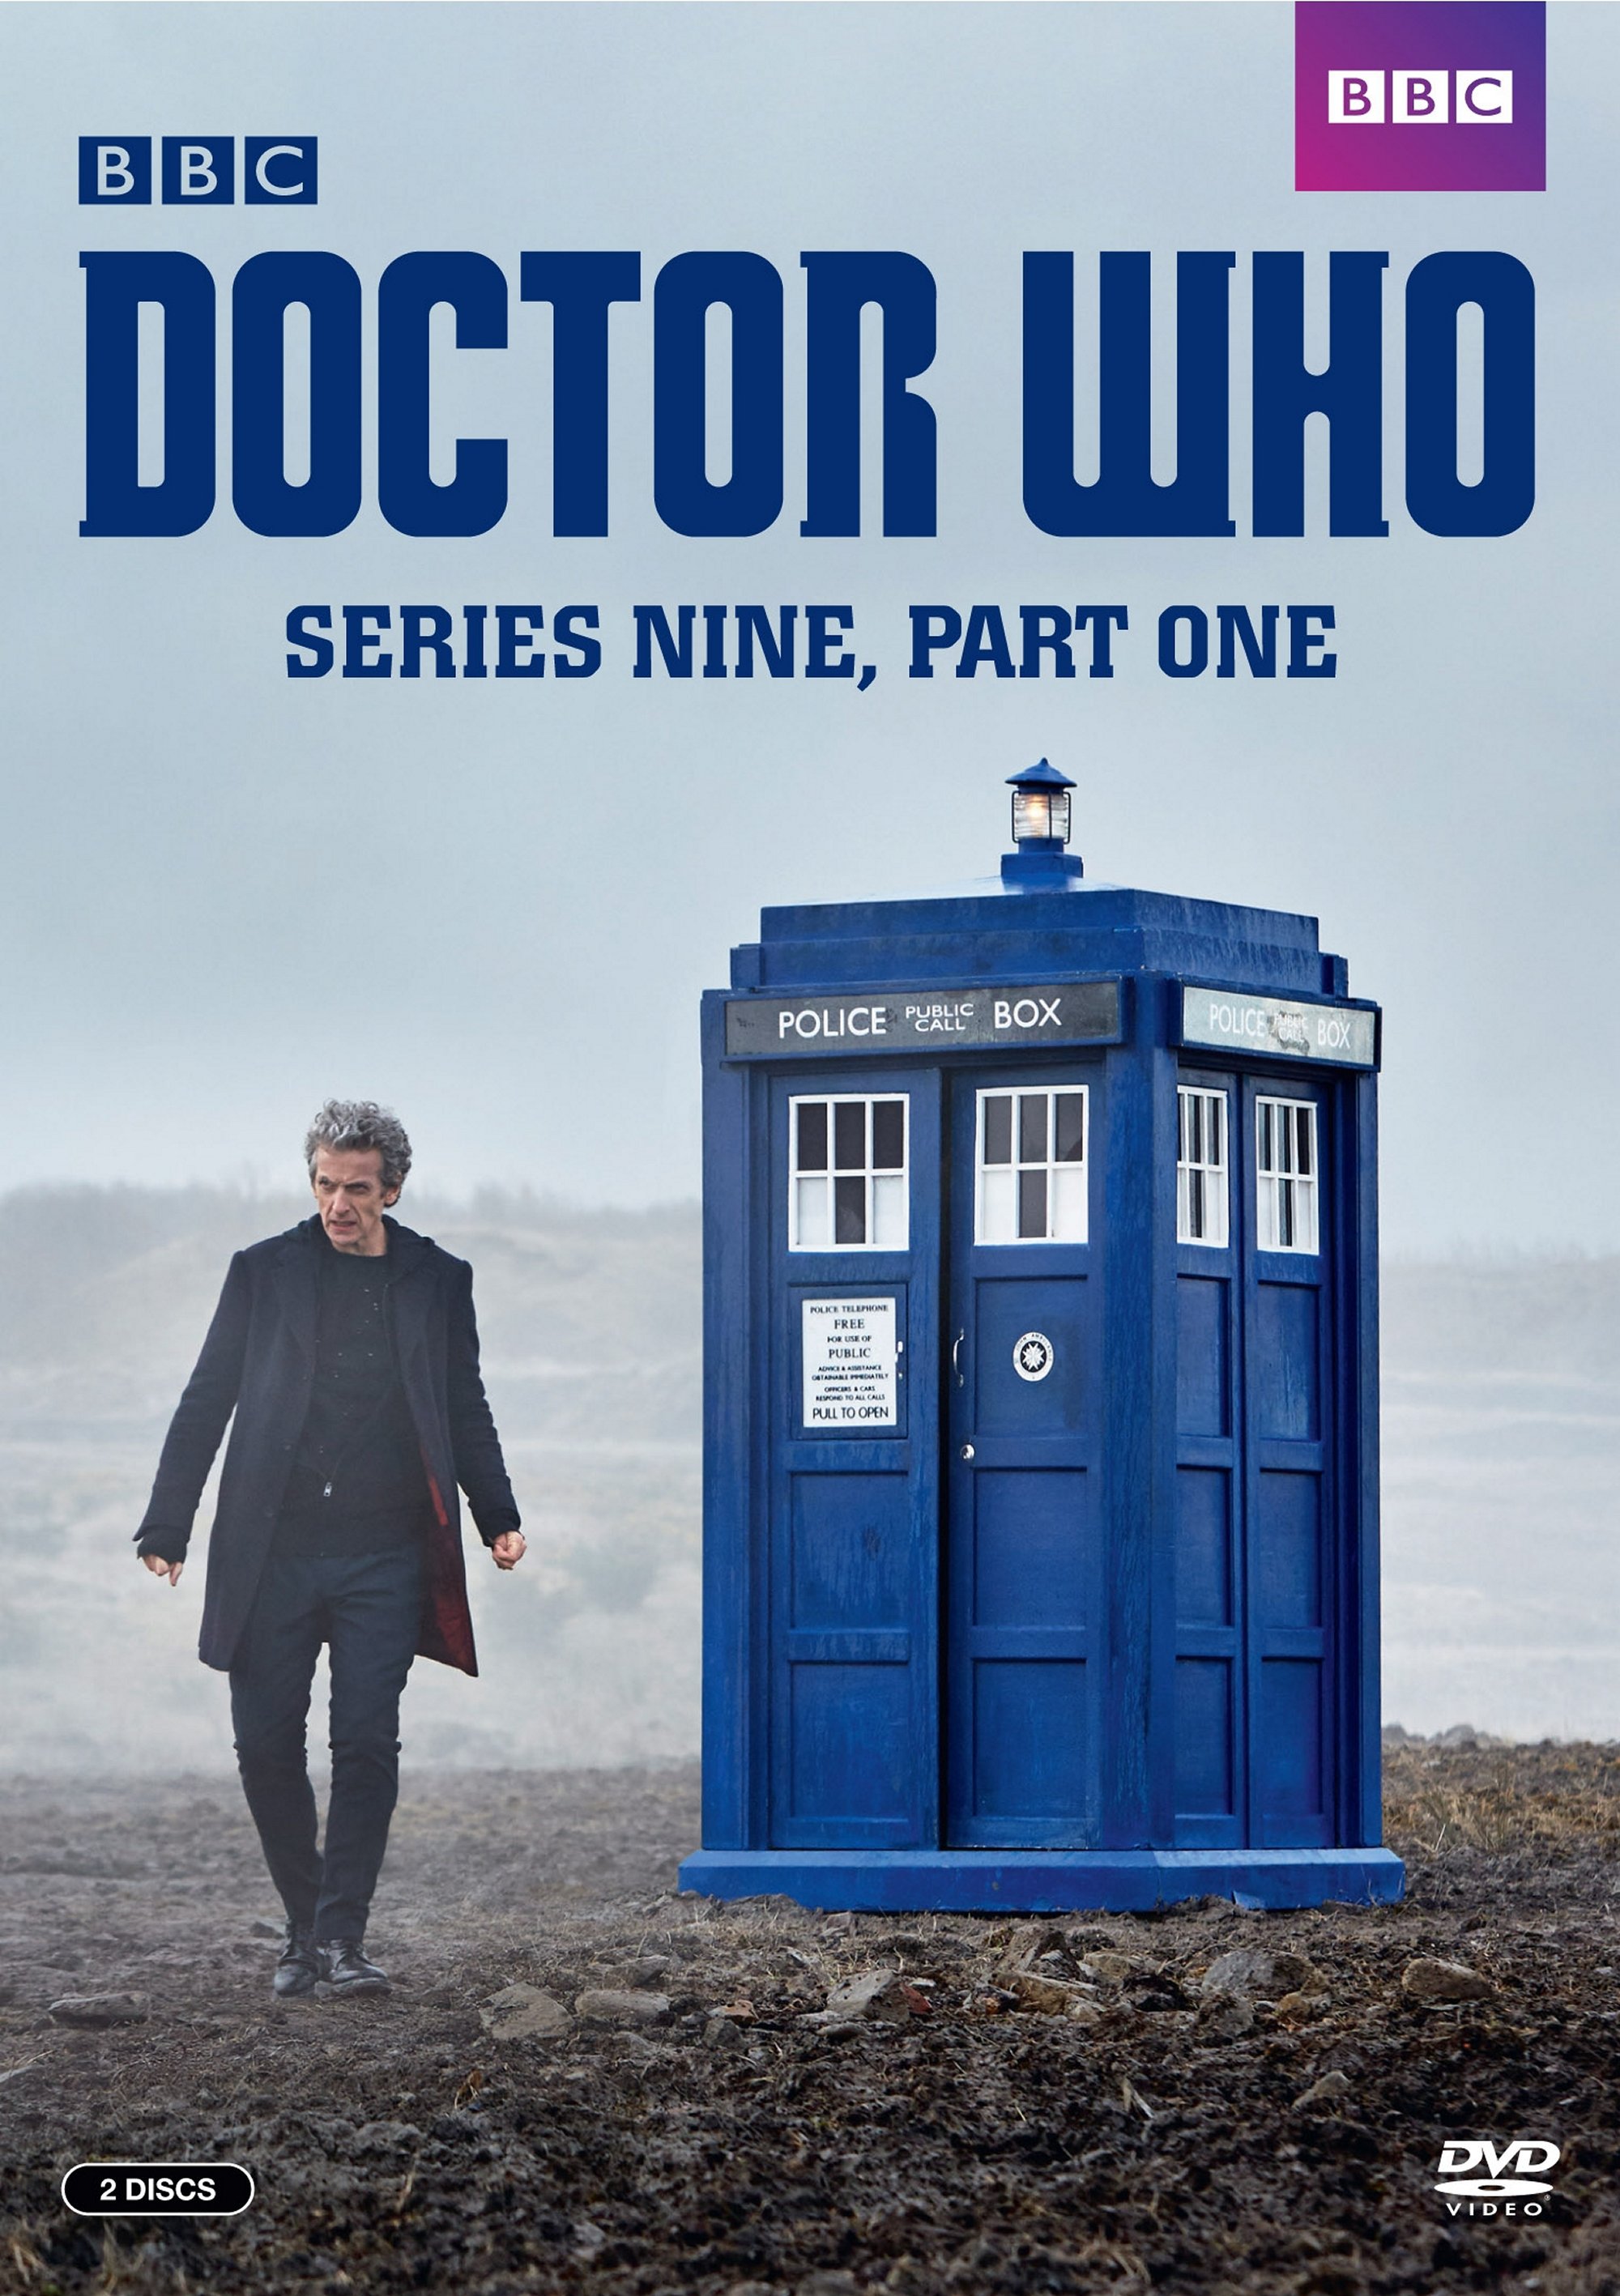 Doctor Who Series 9 Part 1 2 Discs Dvd Best Buy